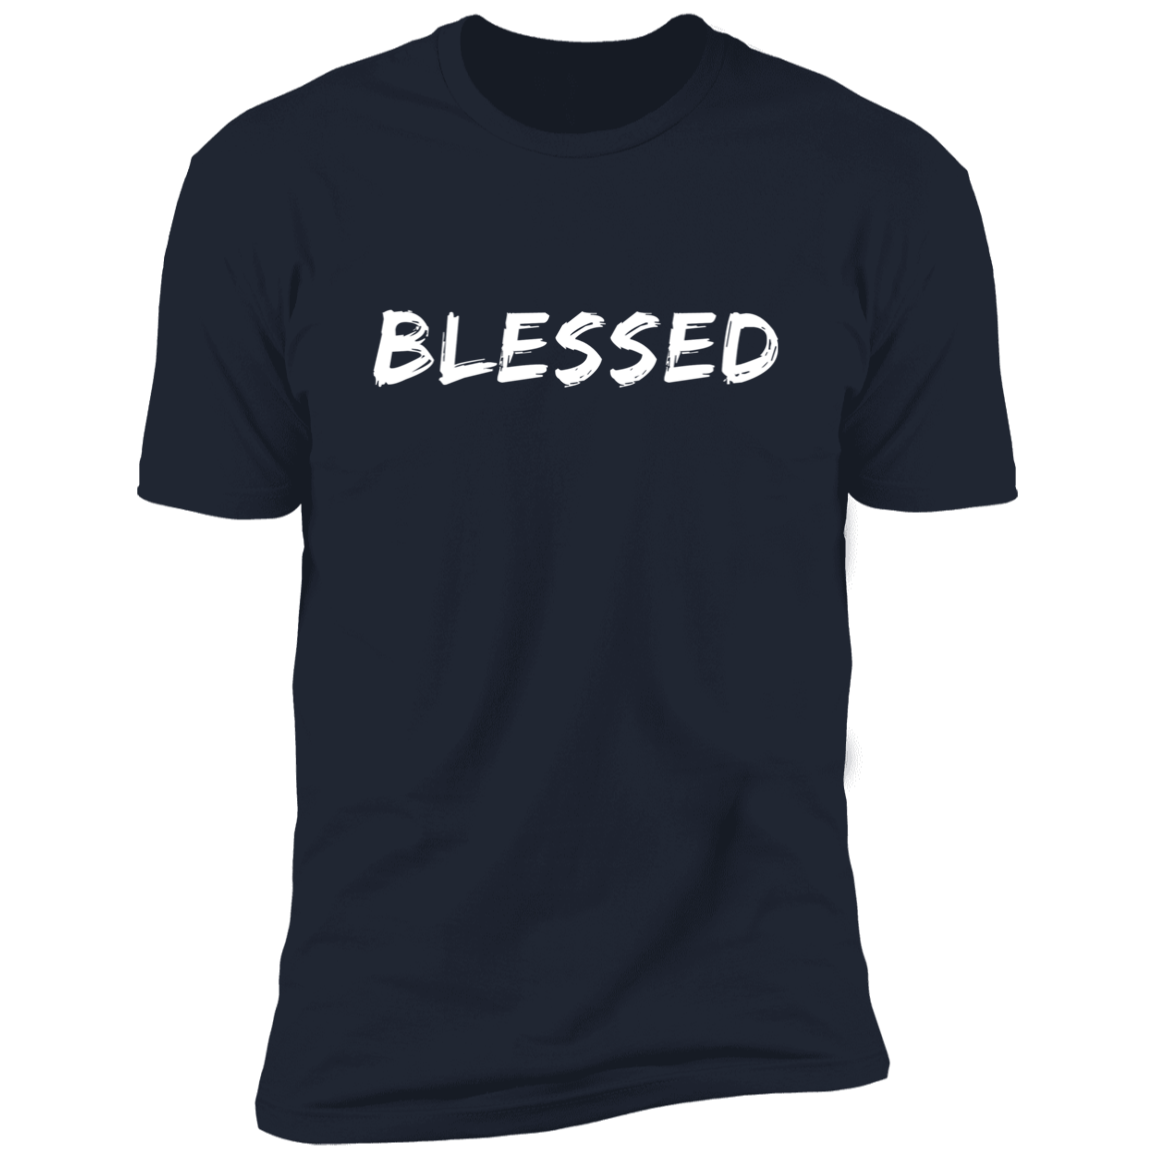 BLESSED Christian /Summer Short Sleeve T-SHIRT